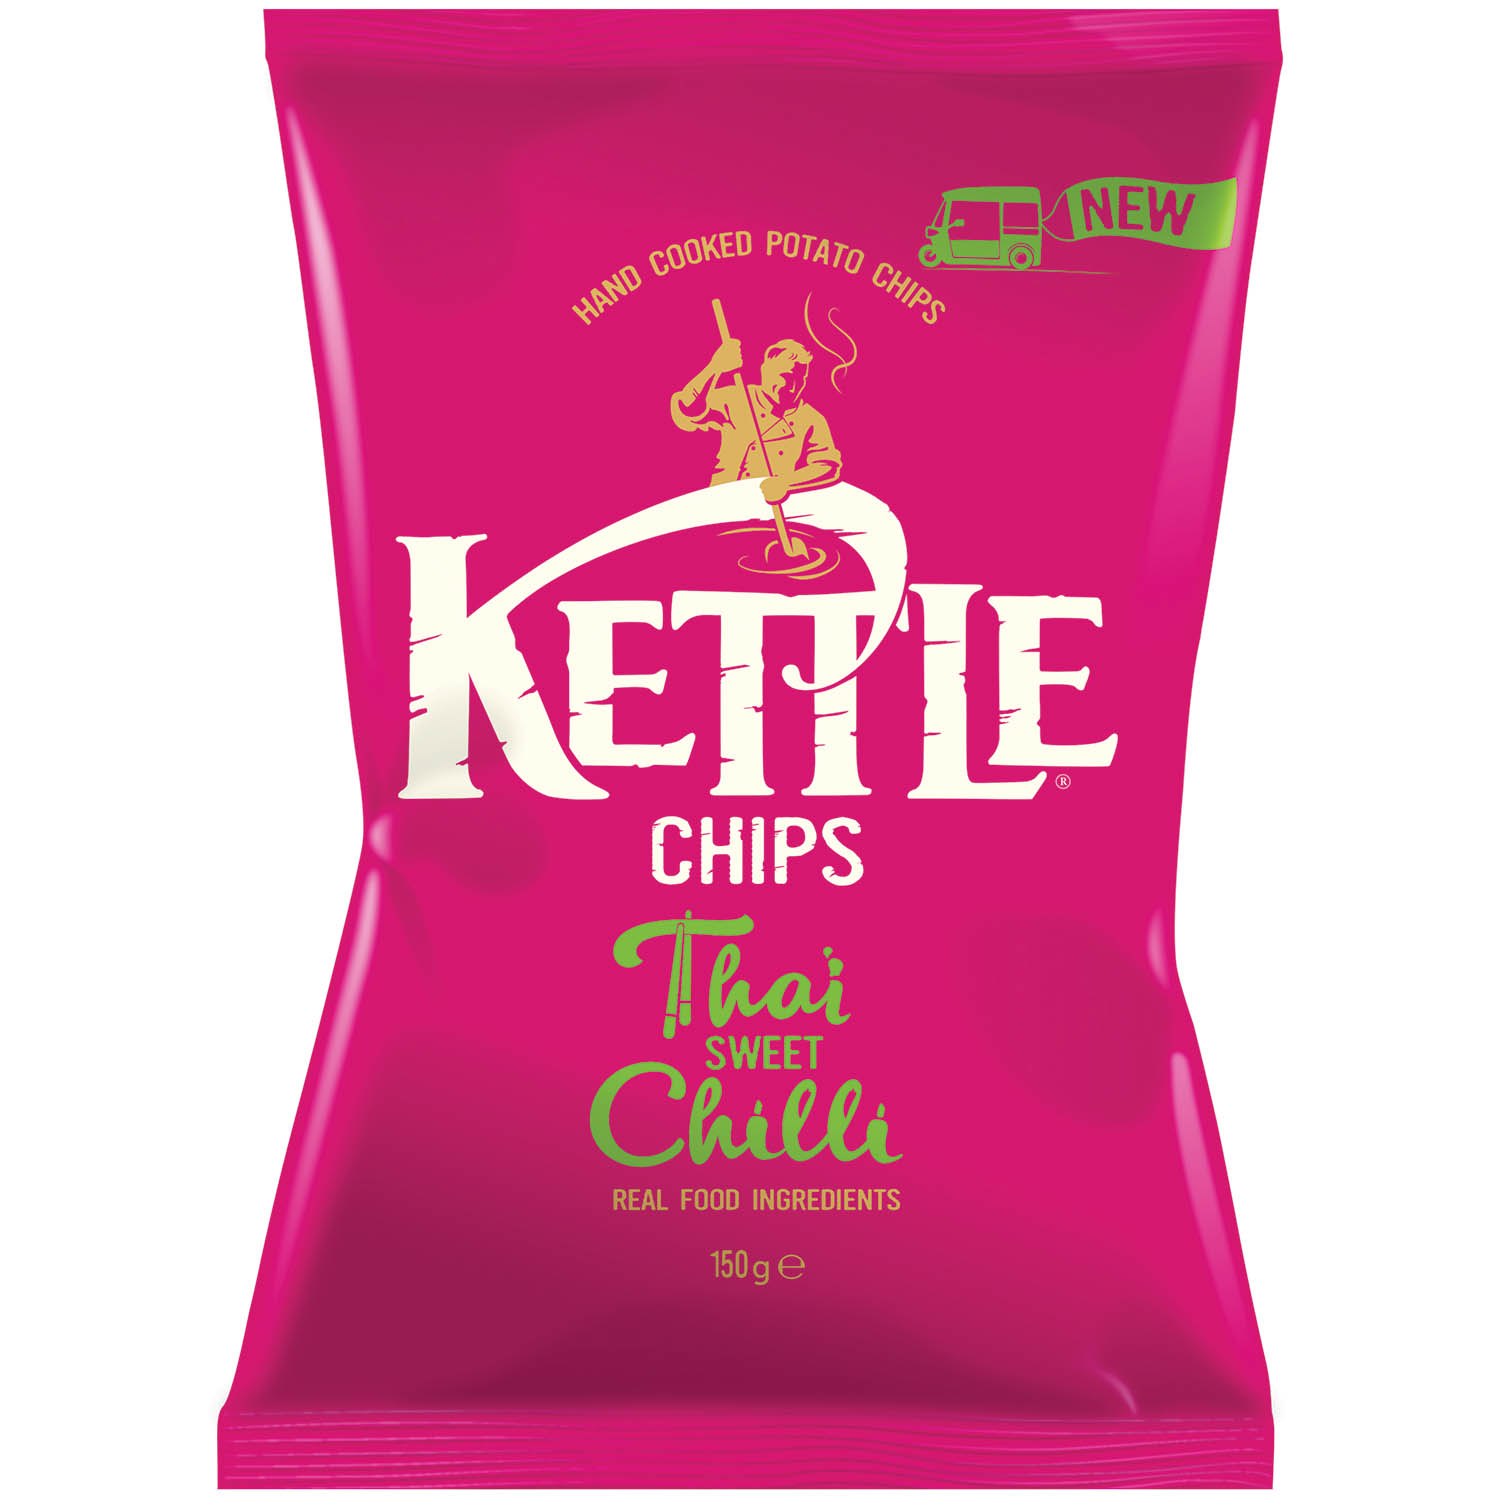 Kettle thaï sweet chilli chips – chips au piment doux thaï – 130g